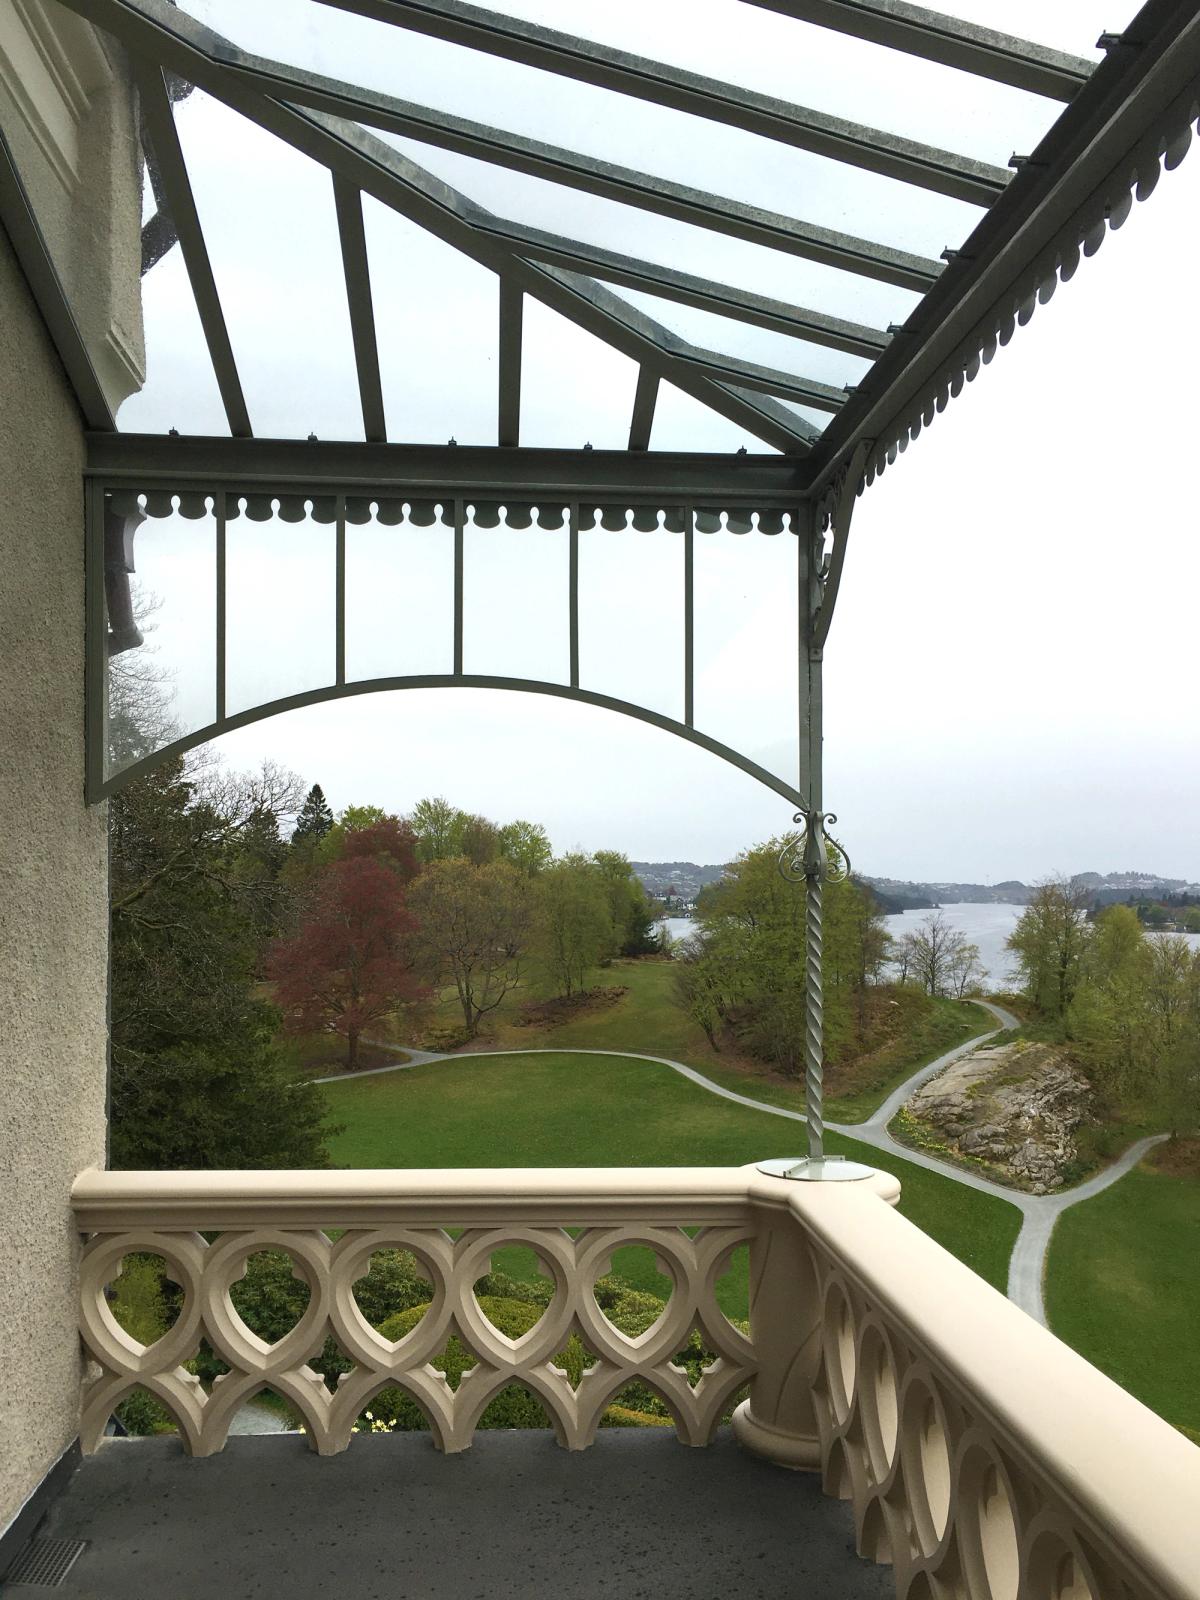 Foto tatt av terrassen i arbeidsprosessen. Viser et grønt landskap på en grå dag, og ferdig støpt rekkverk.